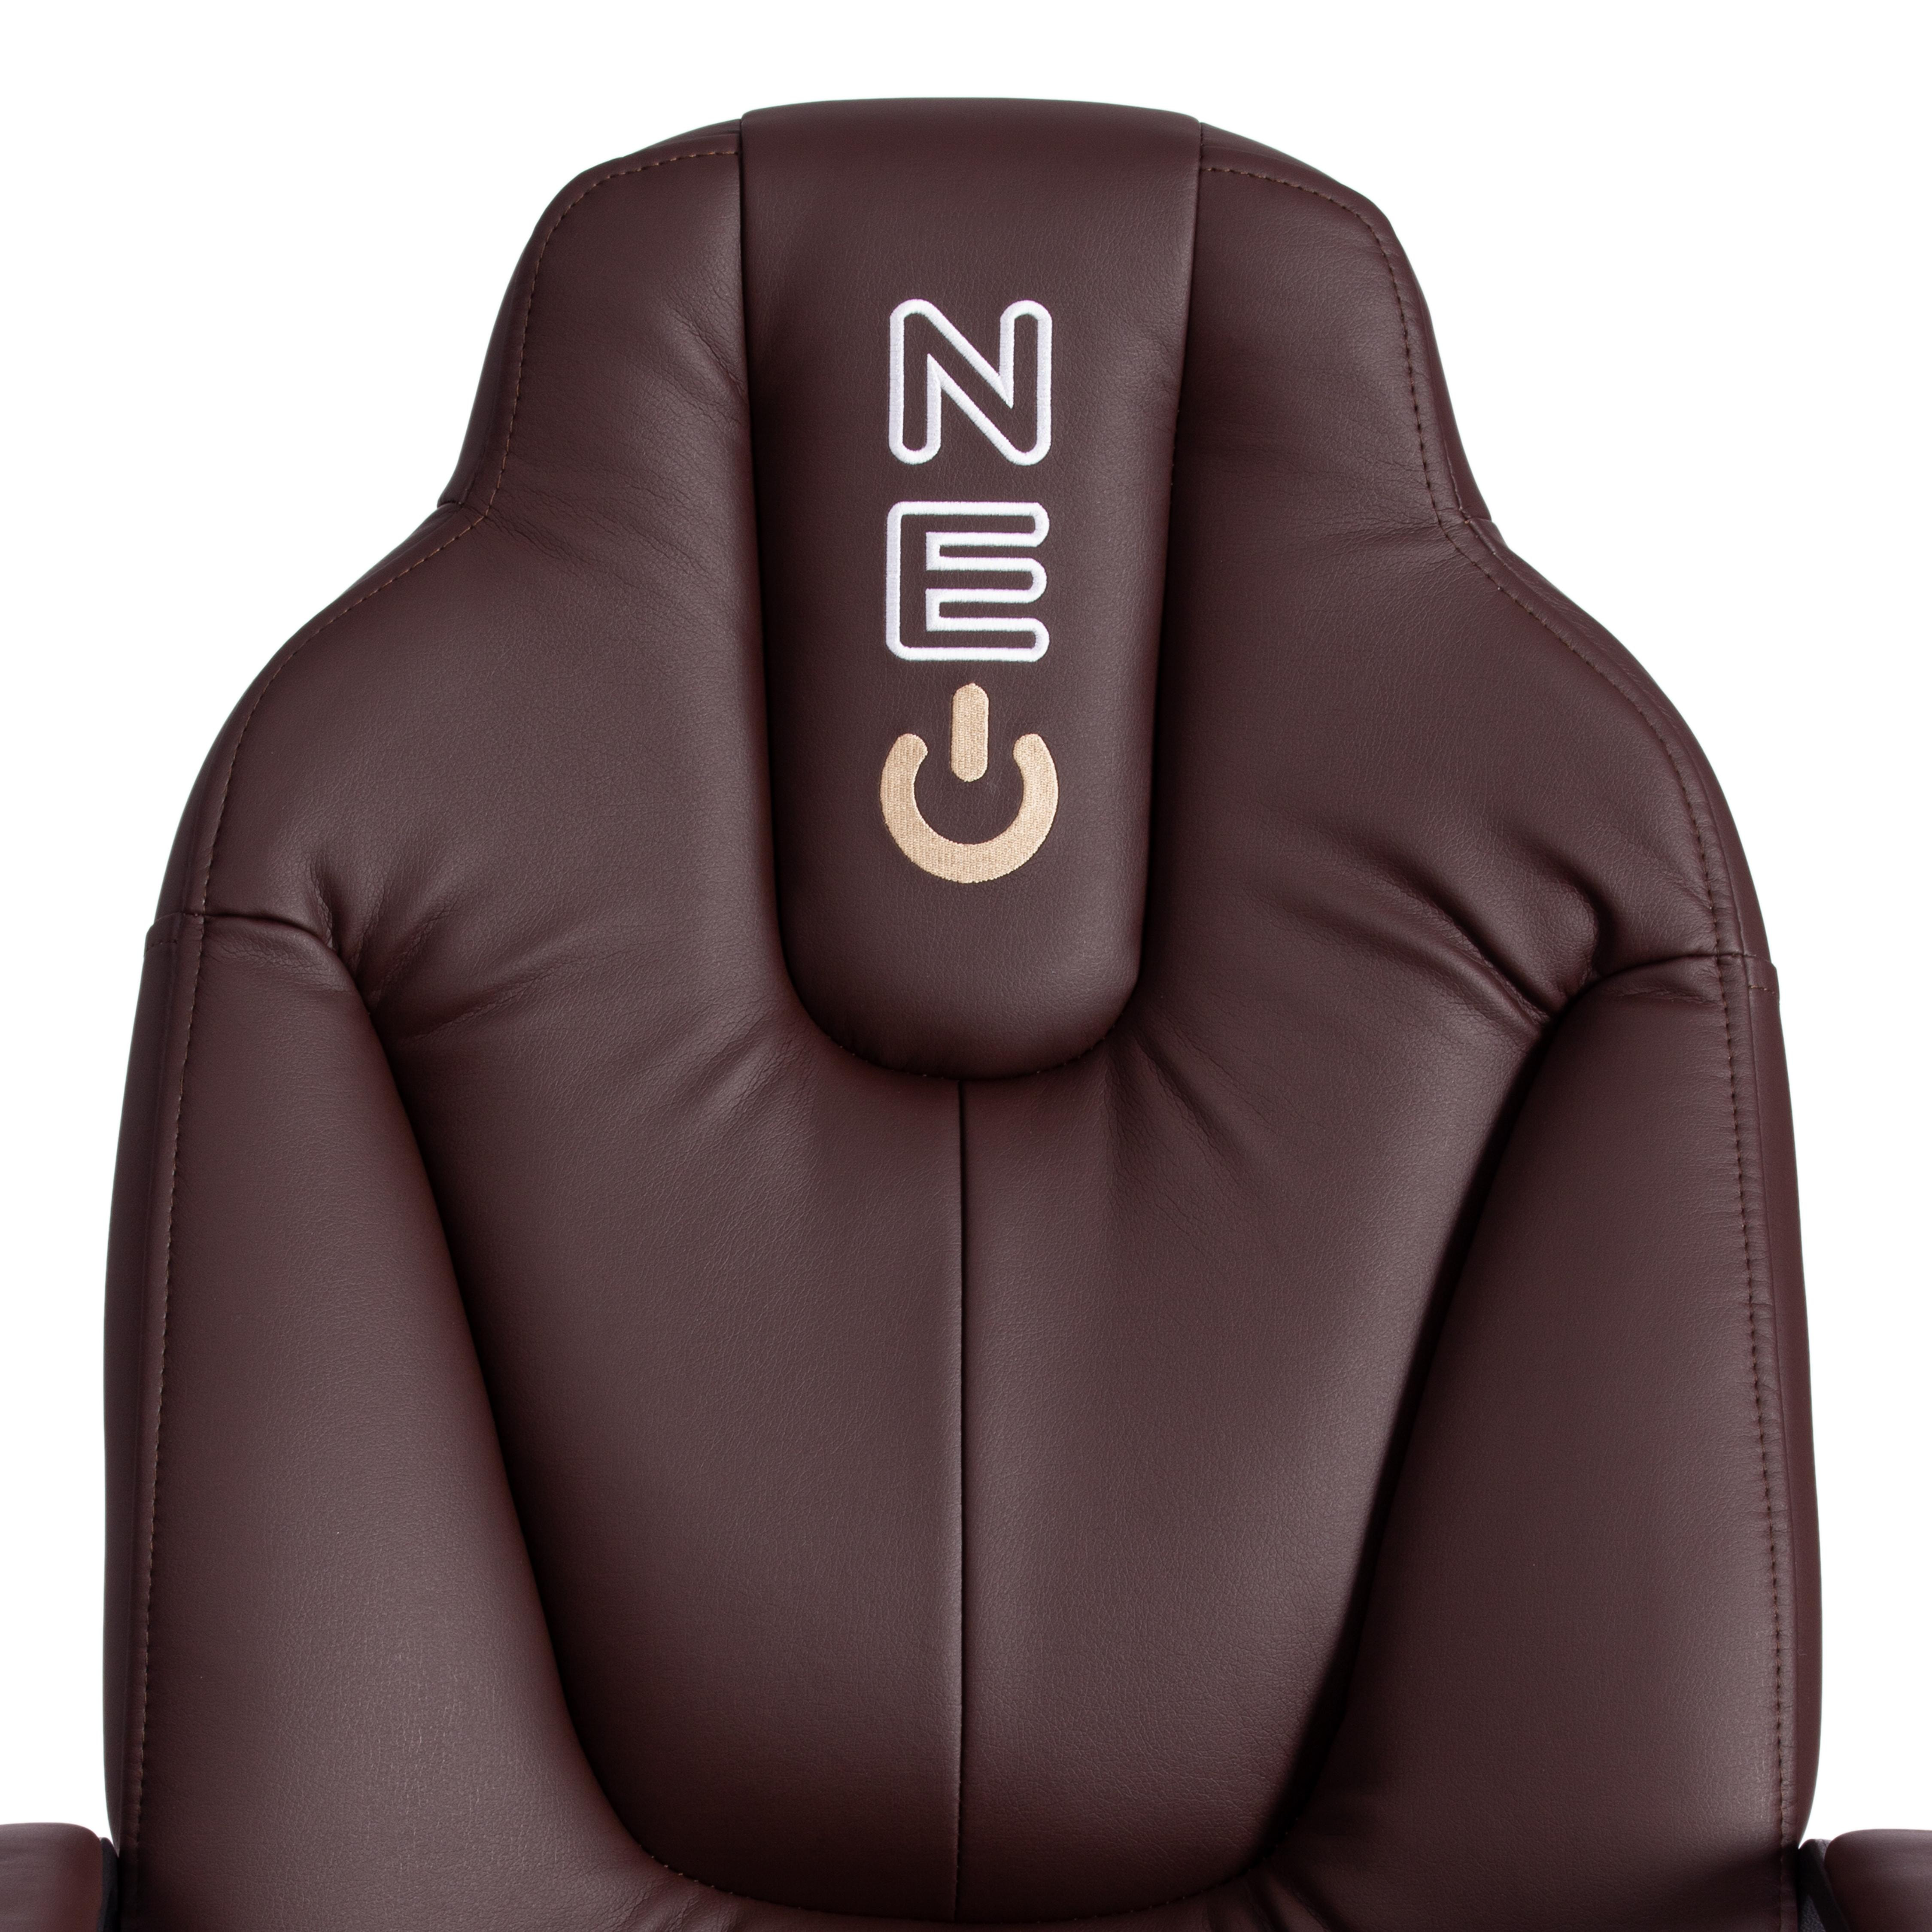 Кресло NEO 2 (22) кож/зам, коричневый, 36-36